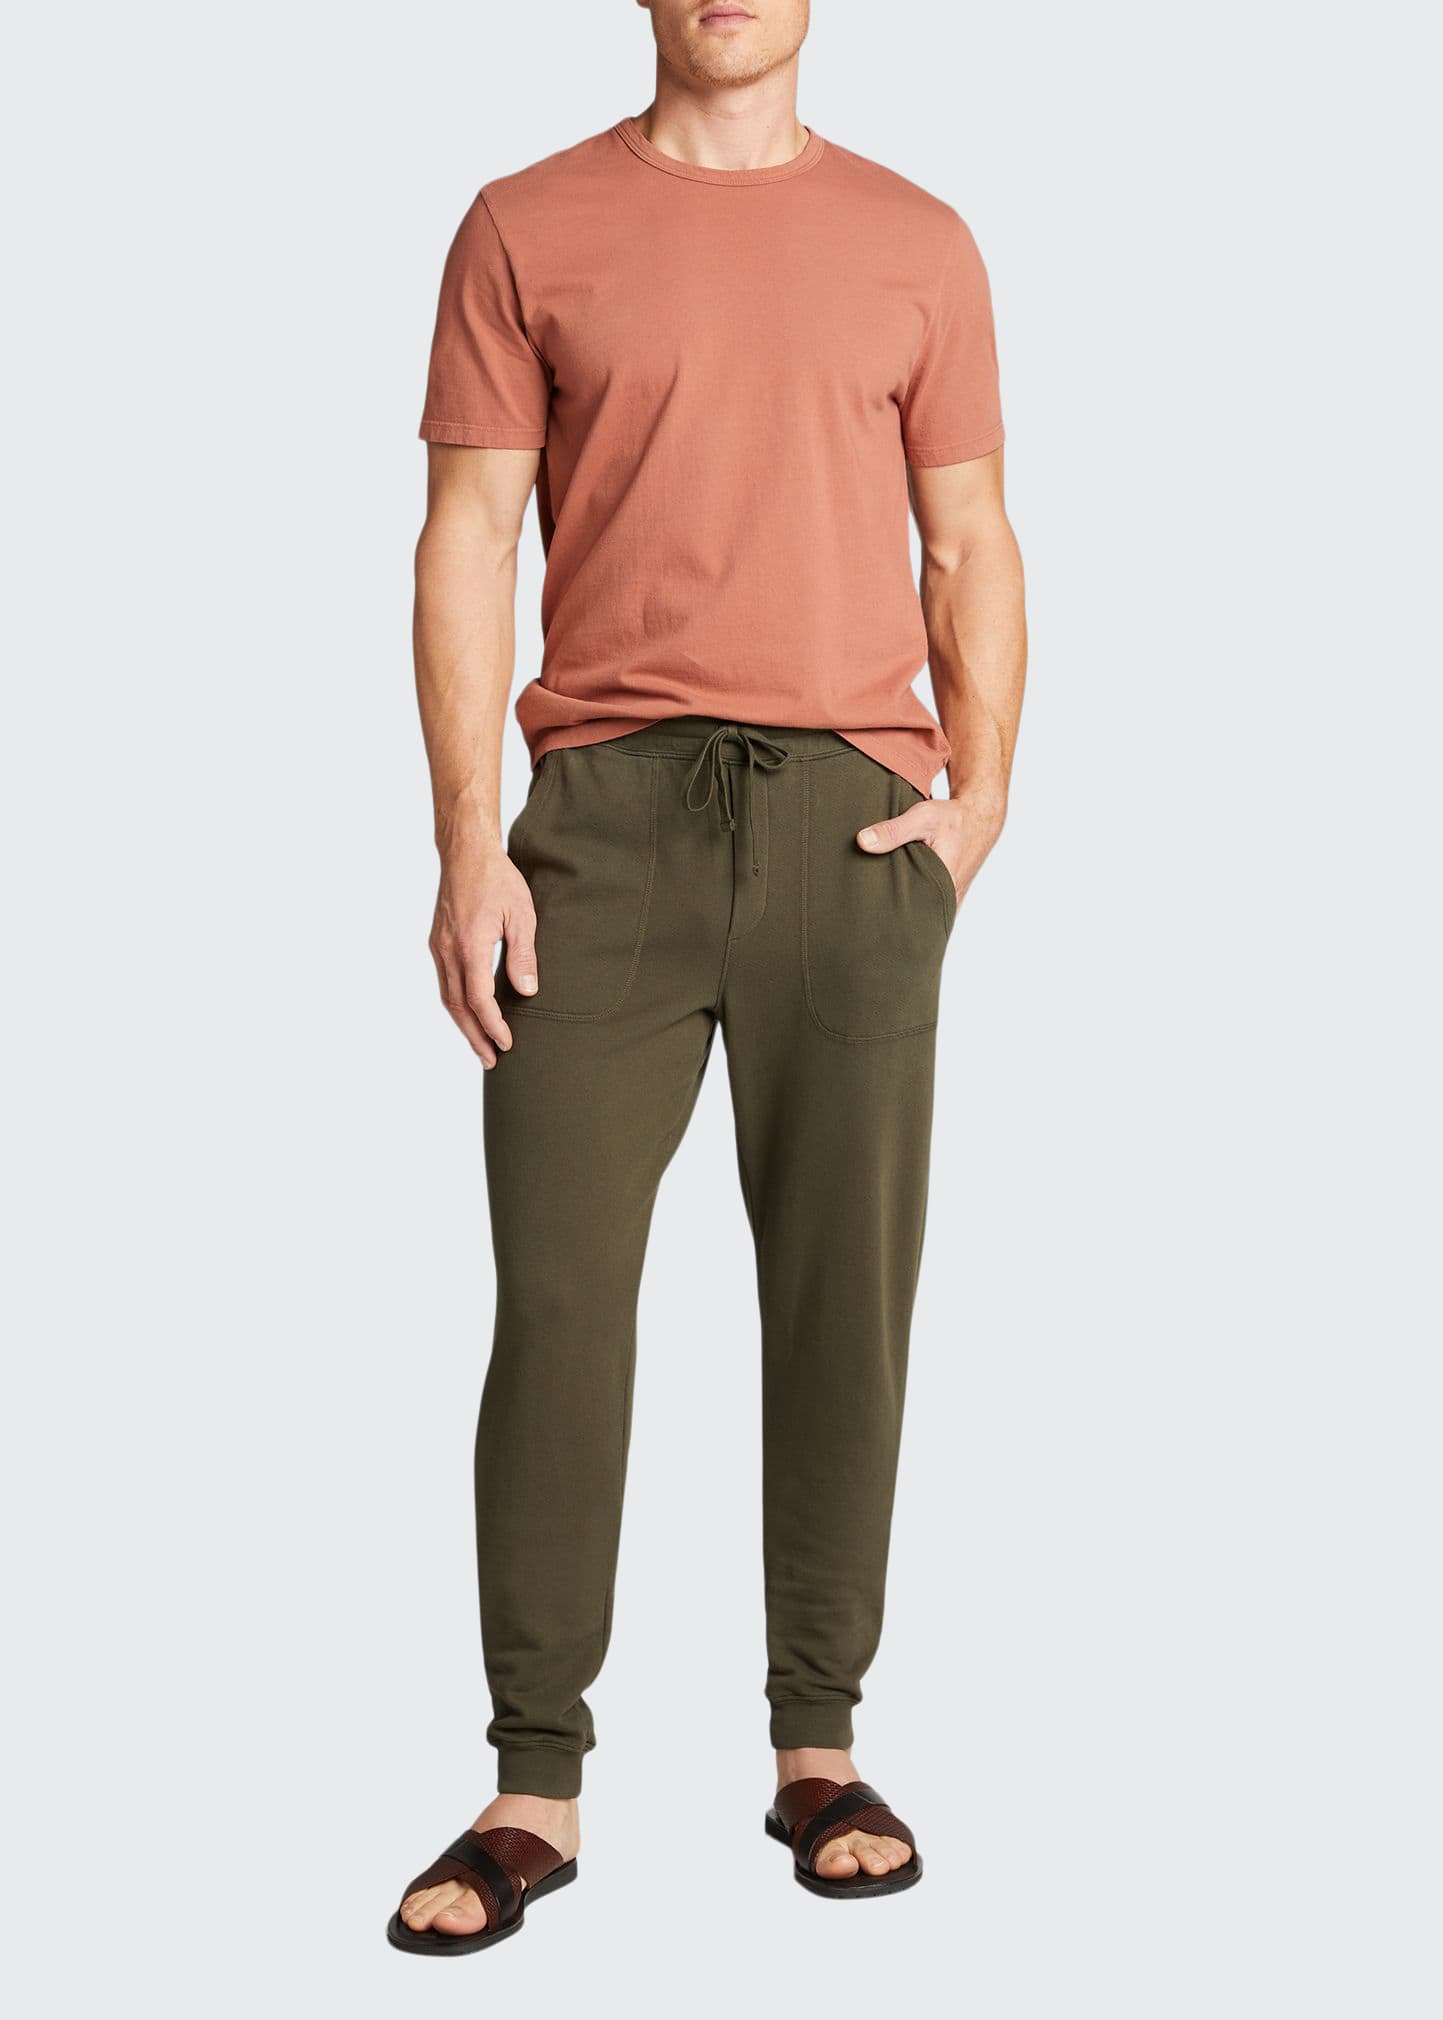 Vince Men's Garment-Dyed Jogger Pants